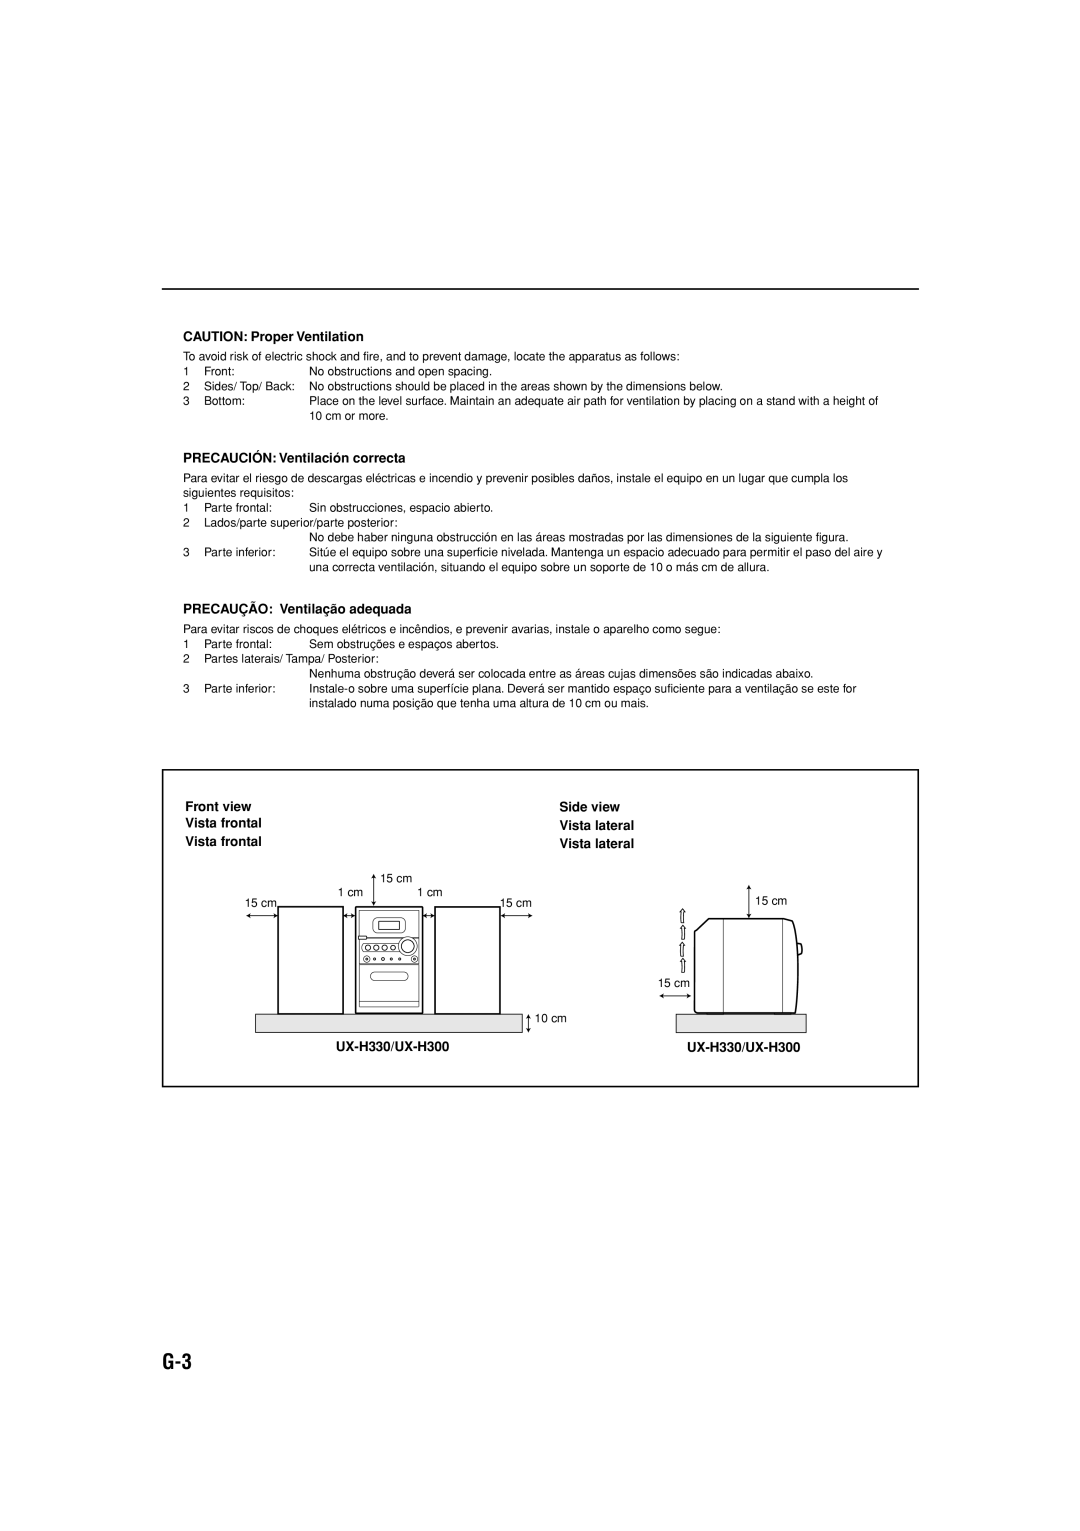 JVC UX-H300 manual CAUTION Proper Ventilation, PRECAUCIÓN: Ventilación correcta, PRECAUÇÃO: Ventilação adequada, Front view 